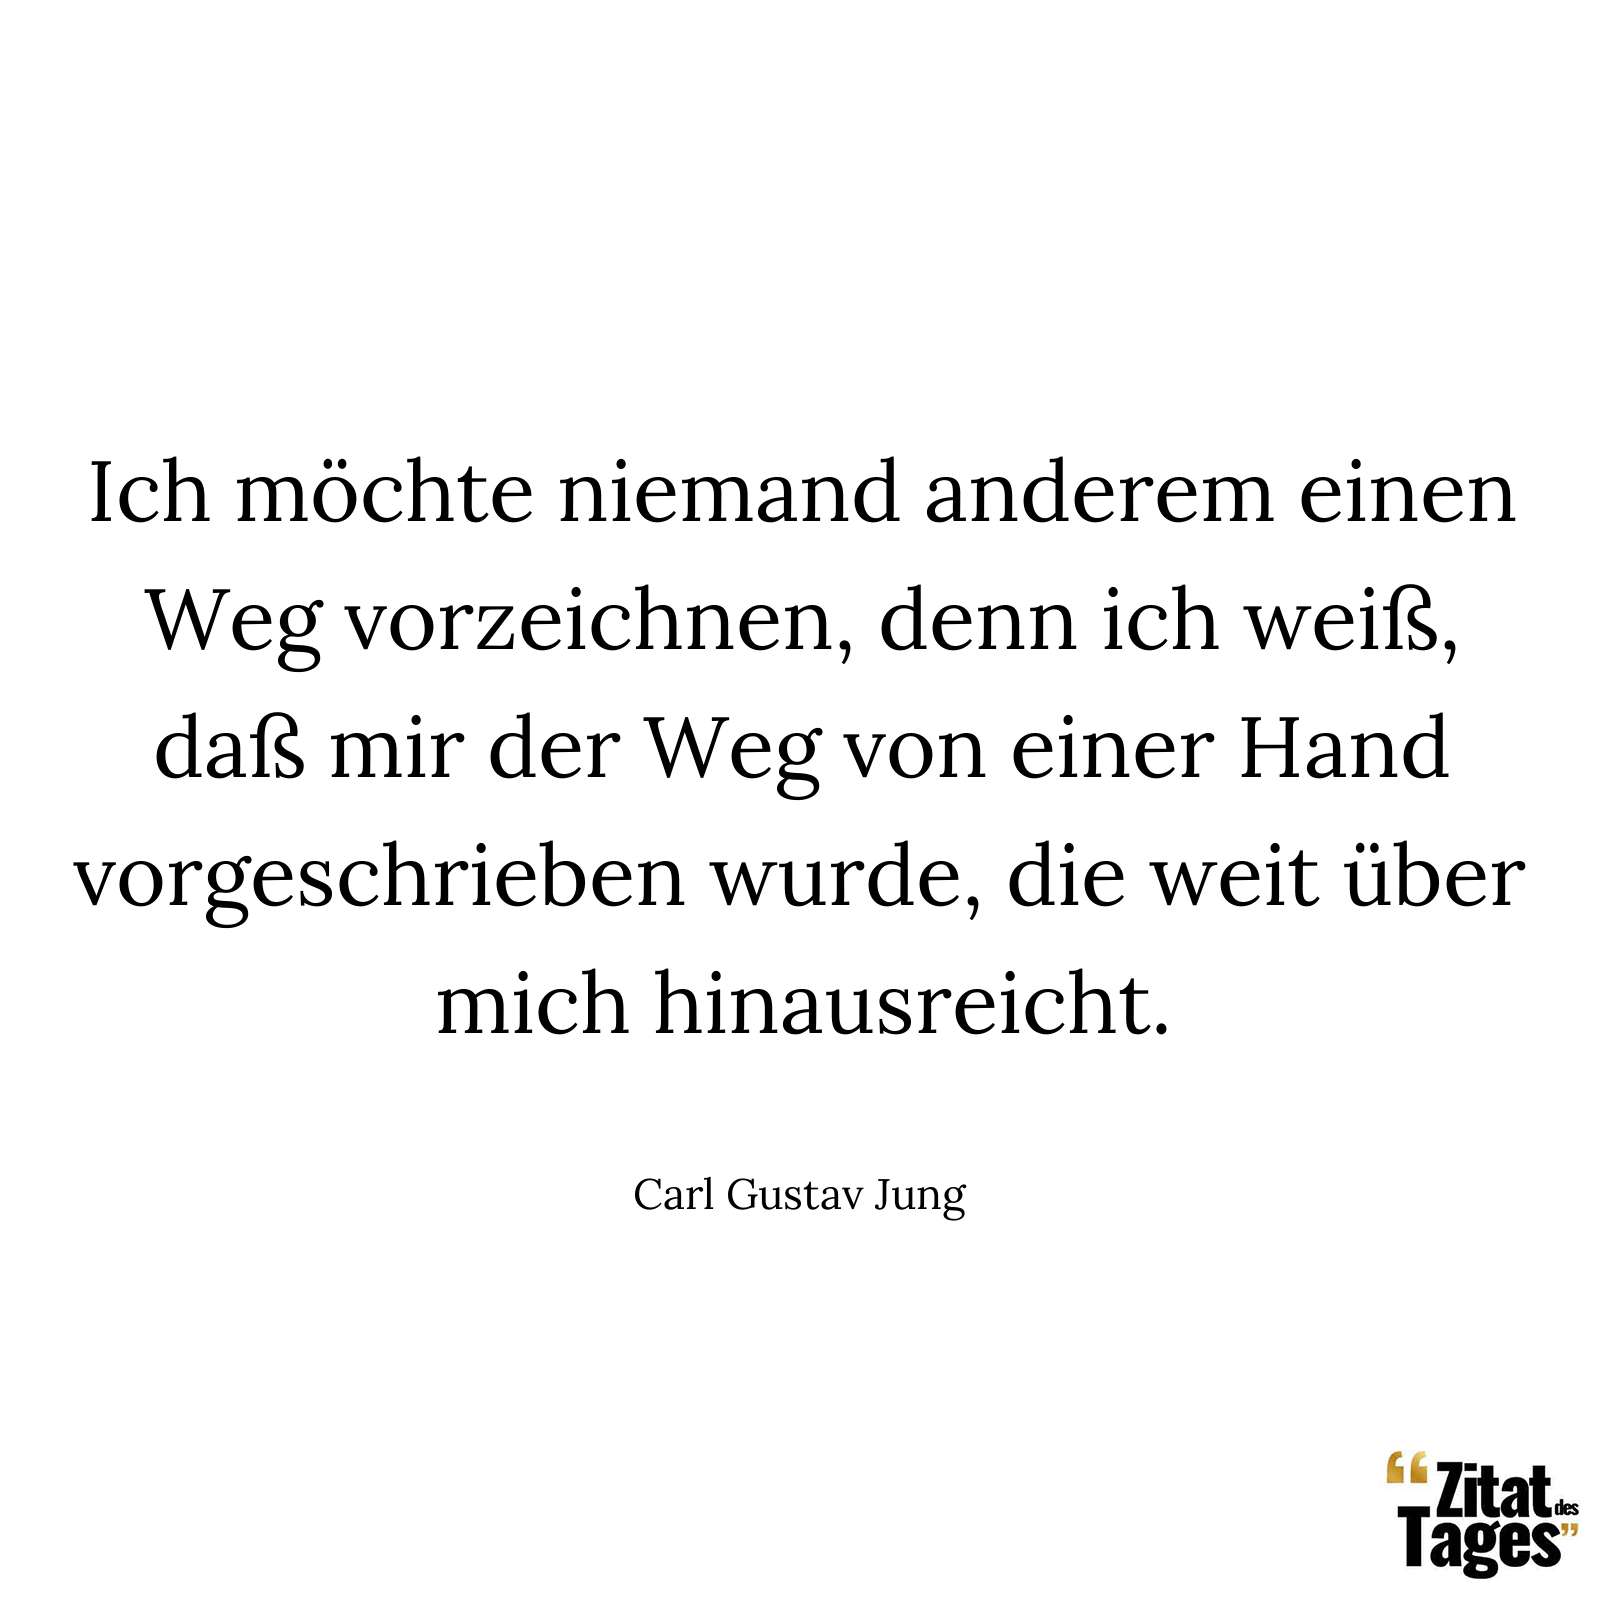 Ich möchte niemand anderem einen Weg vorzeichnen, denn ich weiß, daß mir der Weg von einer Hand vorgeschrieben wurde, die weit über mich hinausreicht. - Carl Gustav Jung